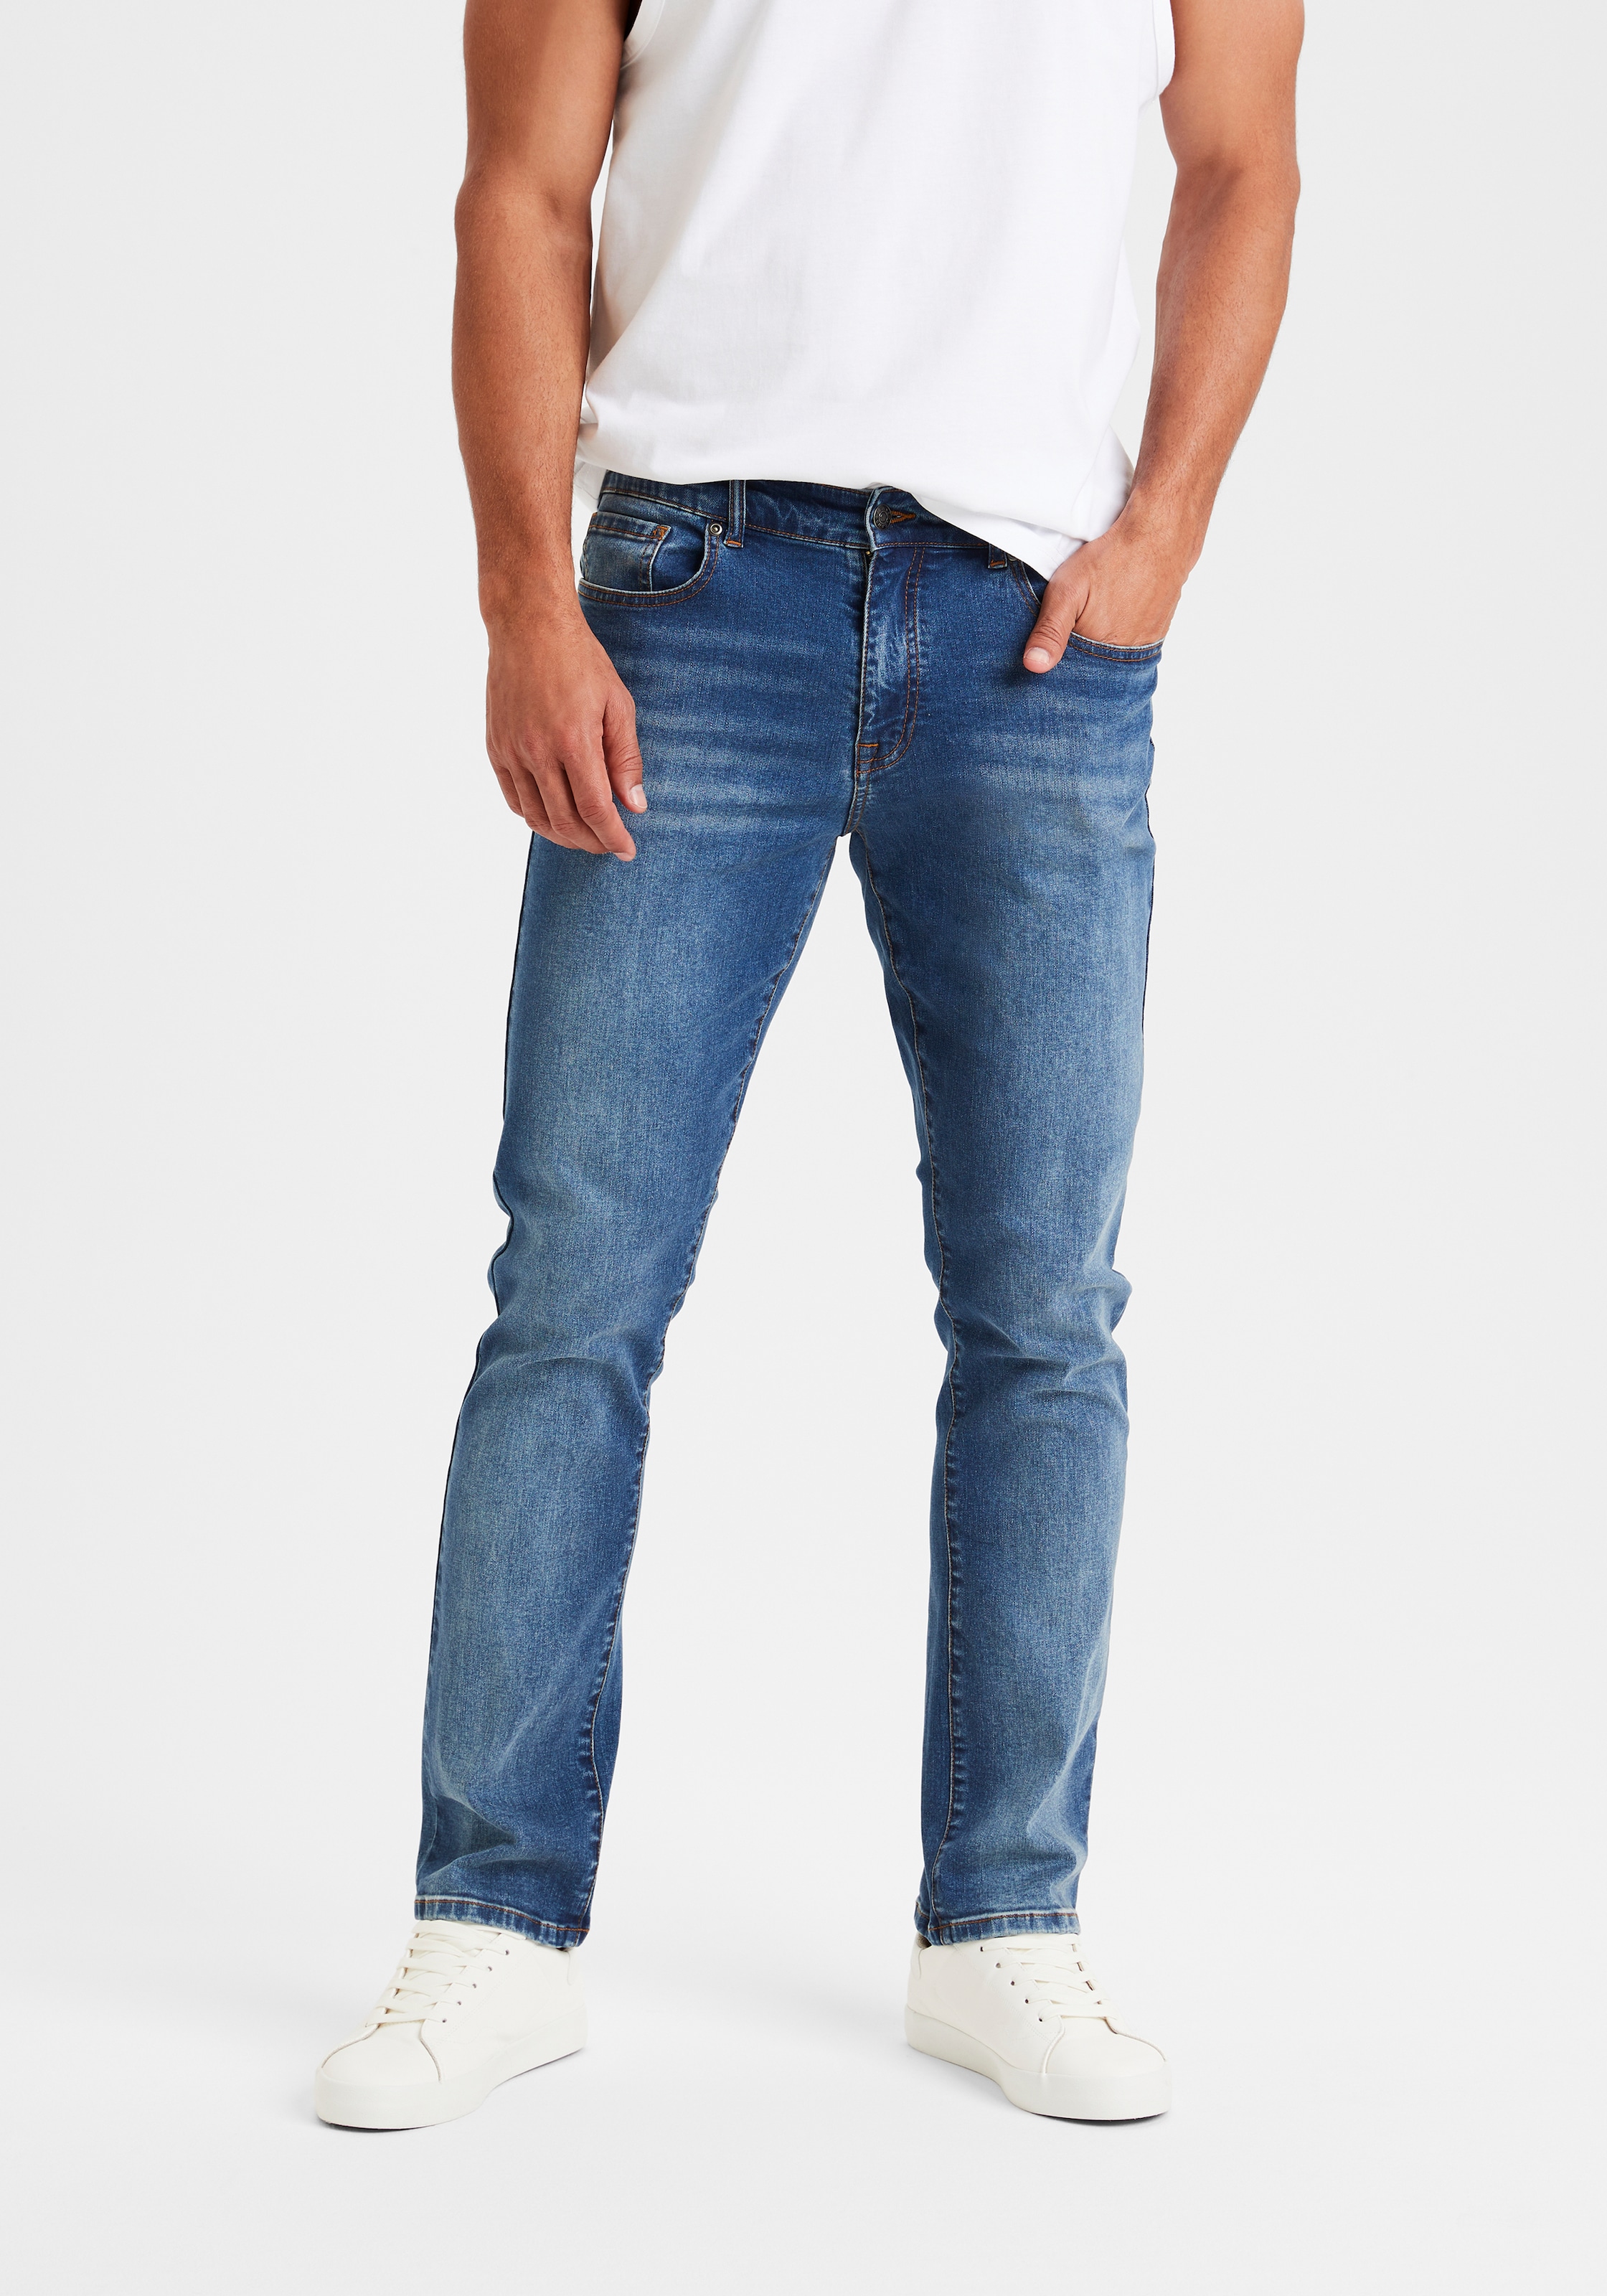 aus Online-Shop Buffalo im bestellen »Straight-fit 5-Pocket-Jeans Denim-Qualität Jeans«, elastischer